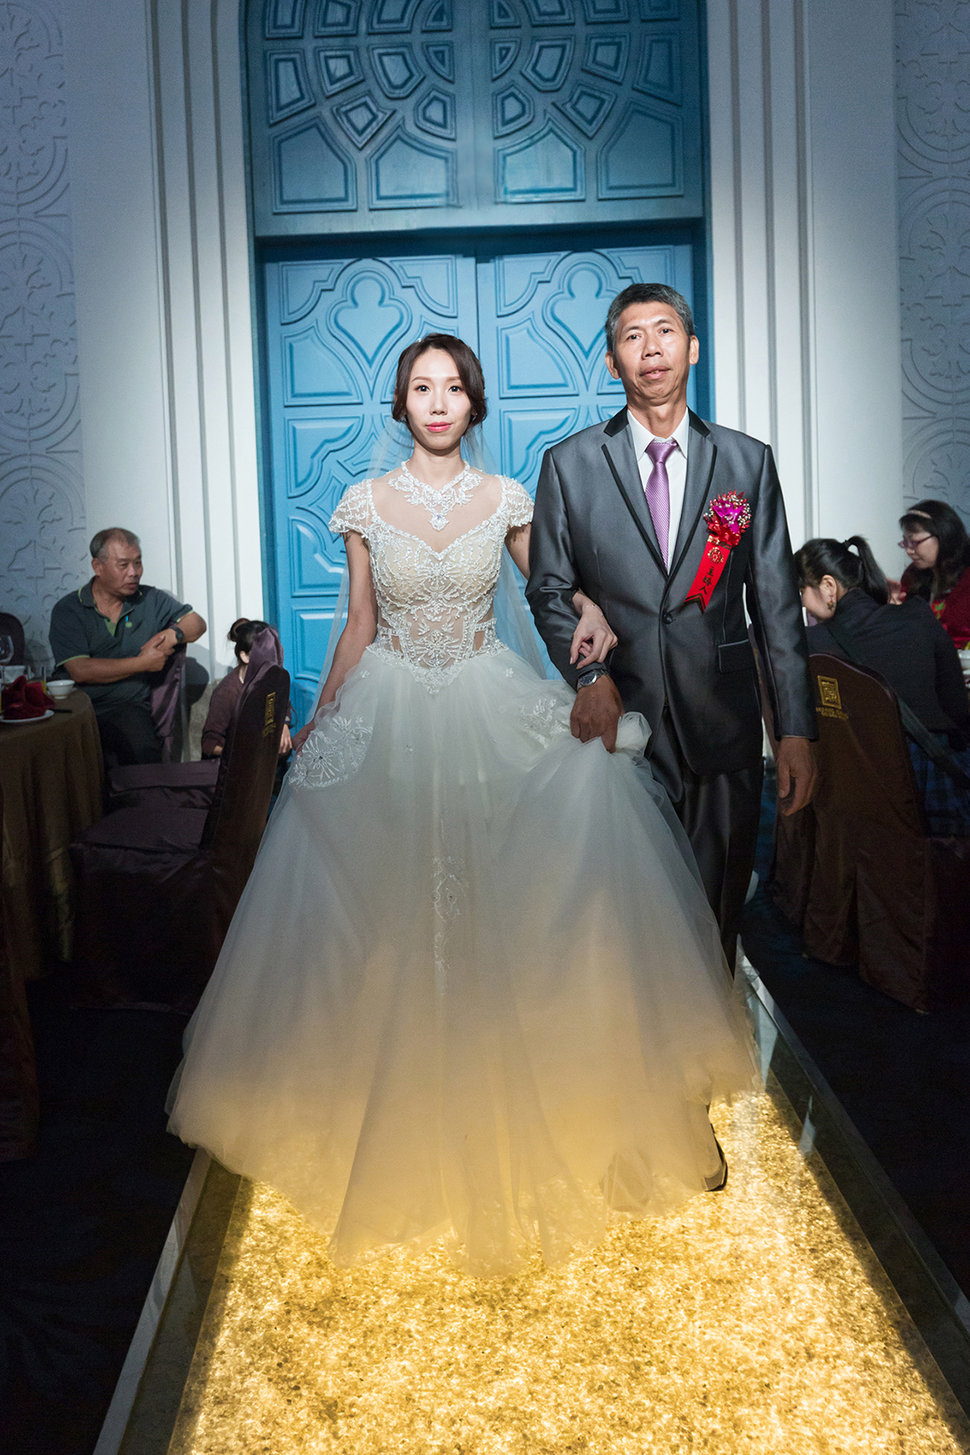 0051 - J-Love 婚禮攝影團隊《結婚吧》